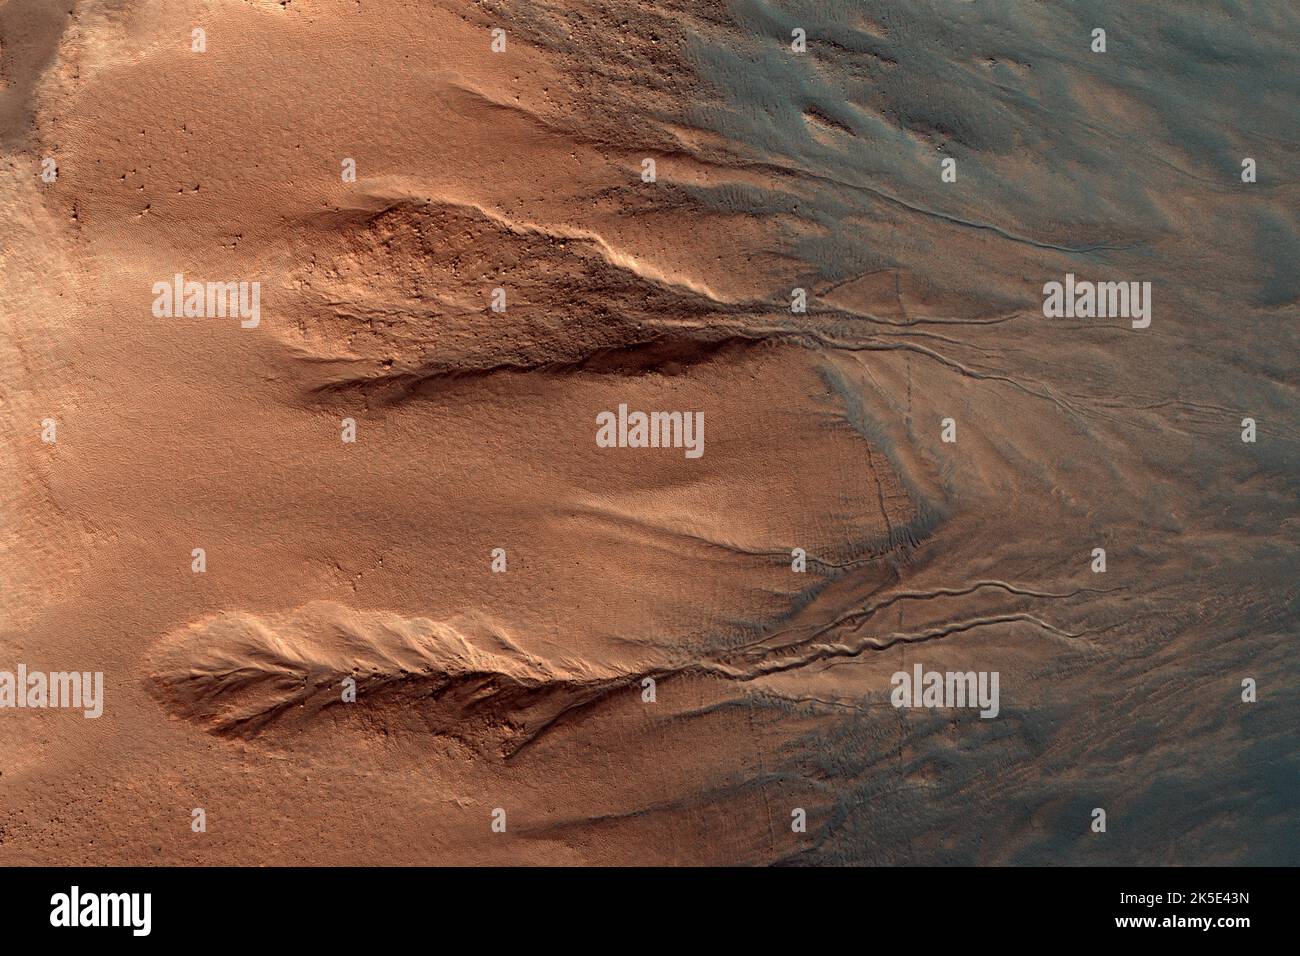 MARTE. I canali sono caratteristiche relativamente comuni nei pendii ripidi di pareti di cratere, possibilmente formate da movimento di massa secco, movimento di gelo di anidride carbonica, O forse lo scioglimento di ghiaccio macinato. Questo esempio mostra una sezione di parete del cratere dal bordo del cratere roccioso all'estrema sinistra dell'immagine, giù alle dune polverose scure sul pavimento del cratere in basso a destra. La roccia delle pareti del cratere si presenta di colore arancione profondo, e i depositi sabbiosi sul pavimento del cratere e la base delle pareti del cratere appaiono di colore blu (non di colore reale). Una versione ottimizzata delle immagini NASA. Credit: ASA/JPL/UArizona Foto Stock